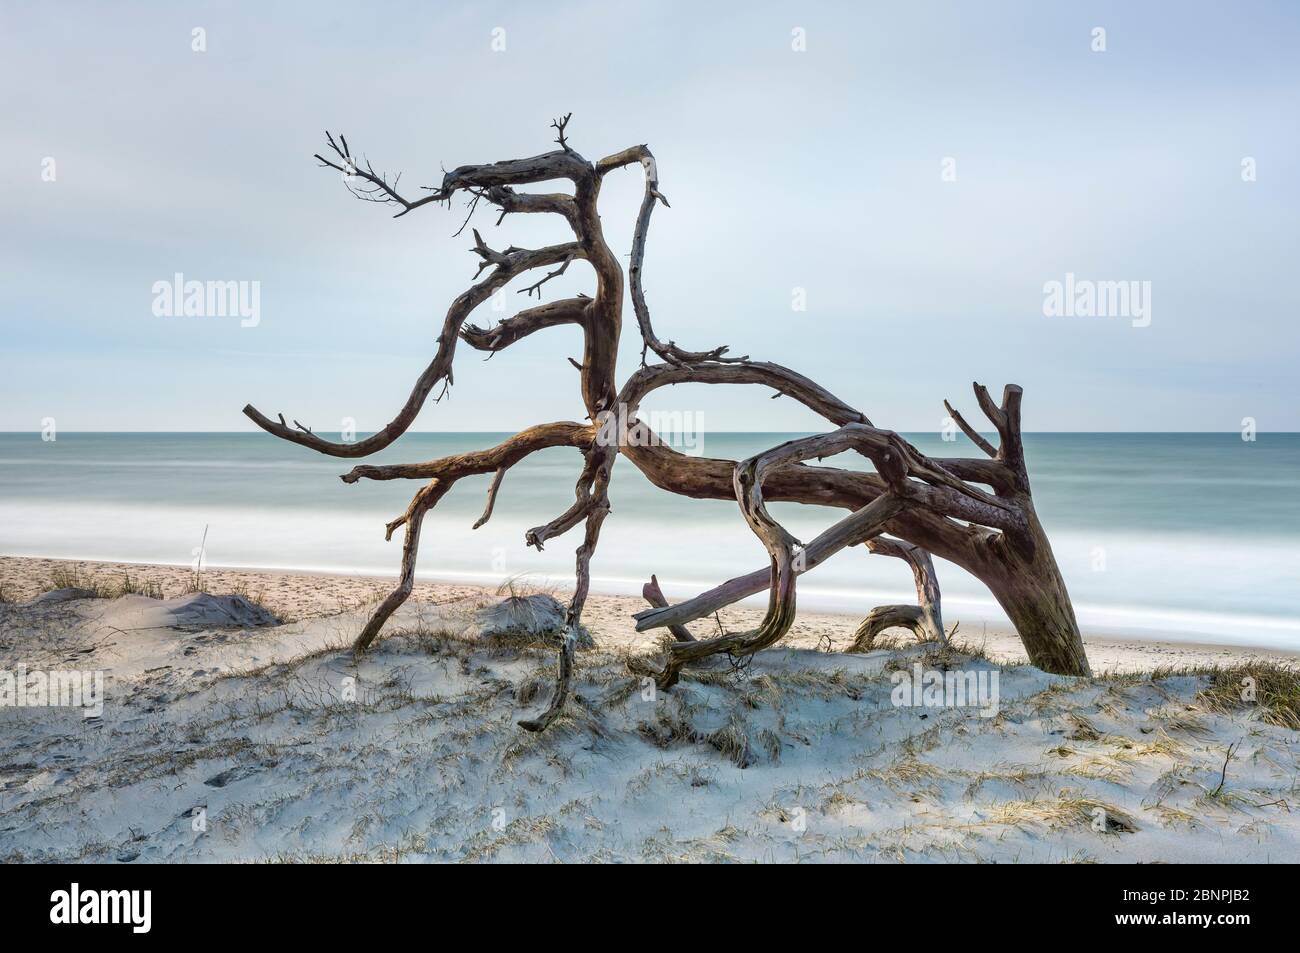 Albero sradicato sulla spiaggia del Mar Baltico, spiaggia sabbiosa con dune, lunga esposizione, penisola di Fischland-Darß-Zingst, Parco Nazionale di Vorpommersche Boddenlandschaft, Meclemburgo-Pomerania occidentale, Germania Foto Stock